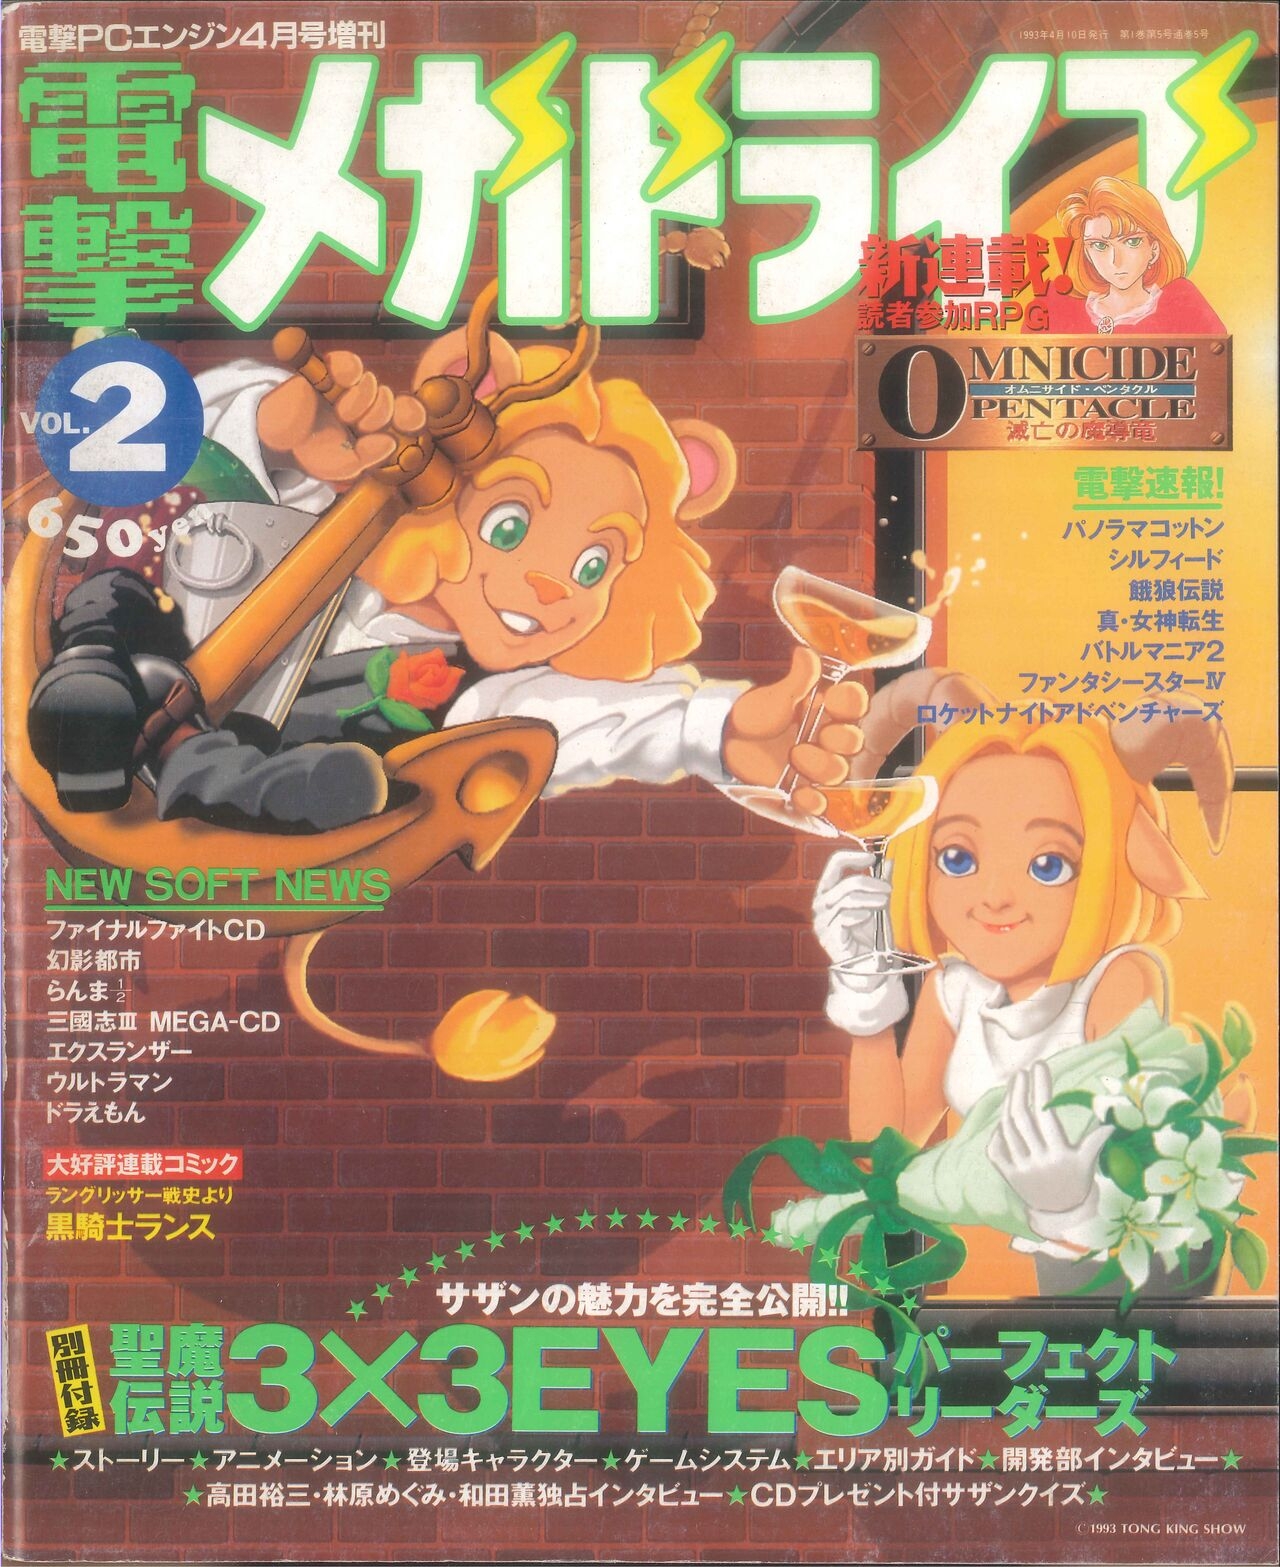 Dengeki Mega Drive Vol.2 (Sega Genesis) (April 1993) 0